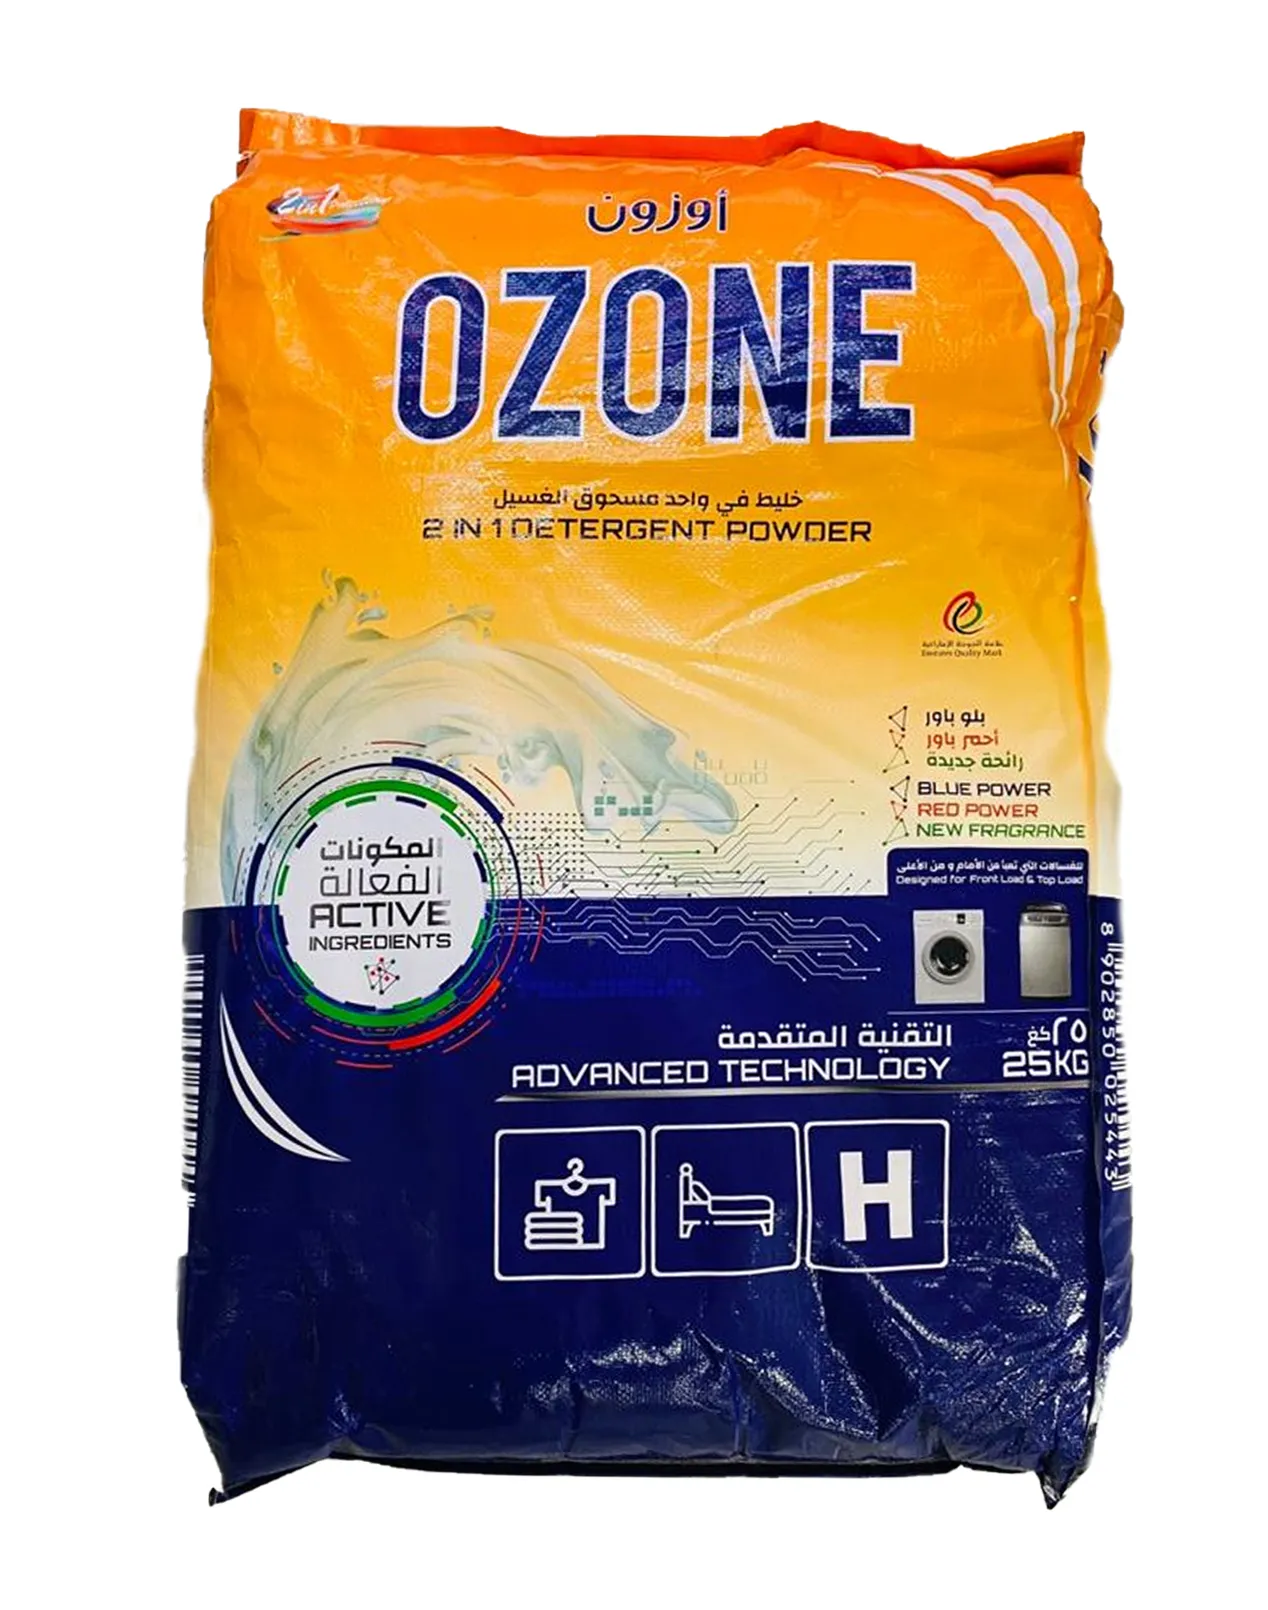 Ozone 2-in-1 Detergent Powder, 25Kg